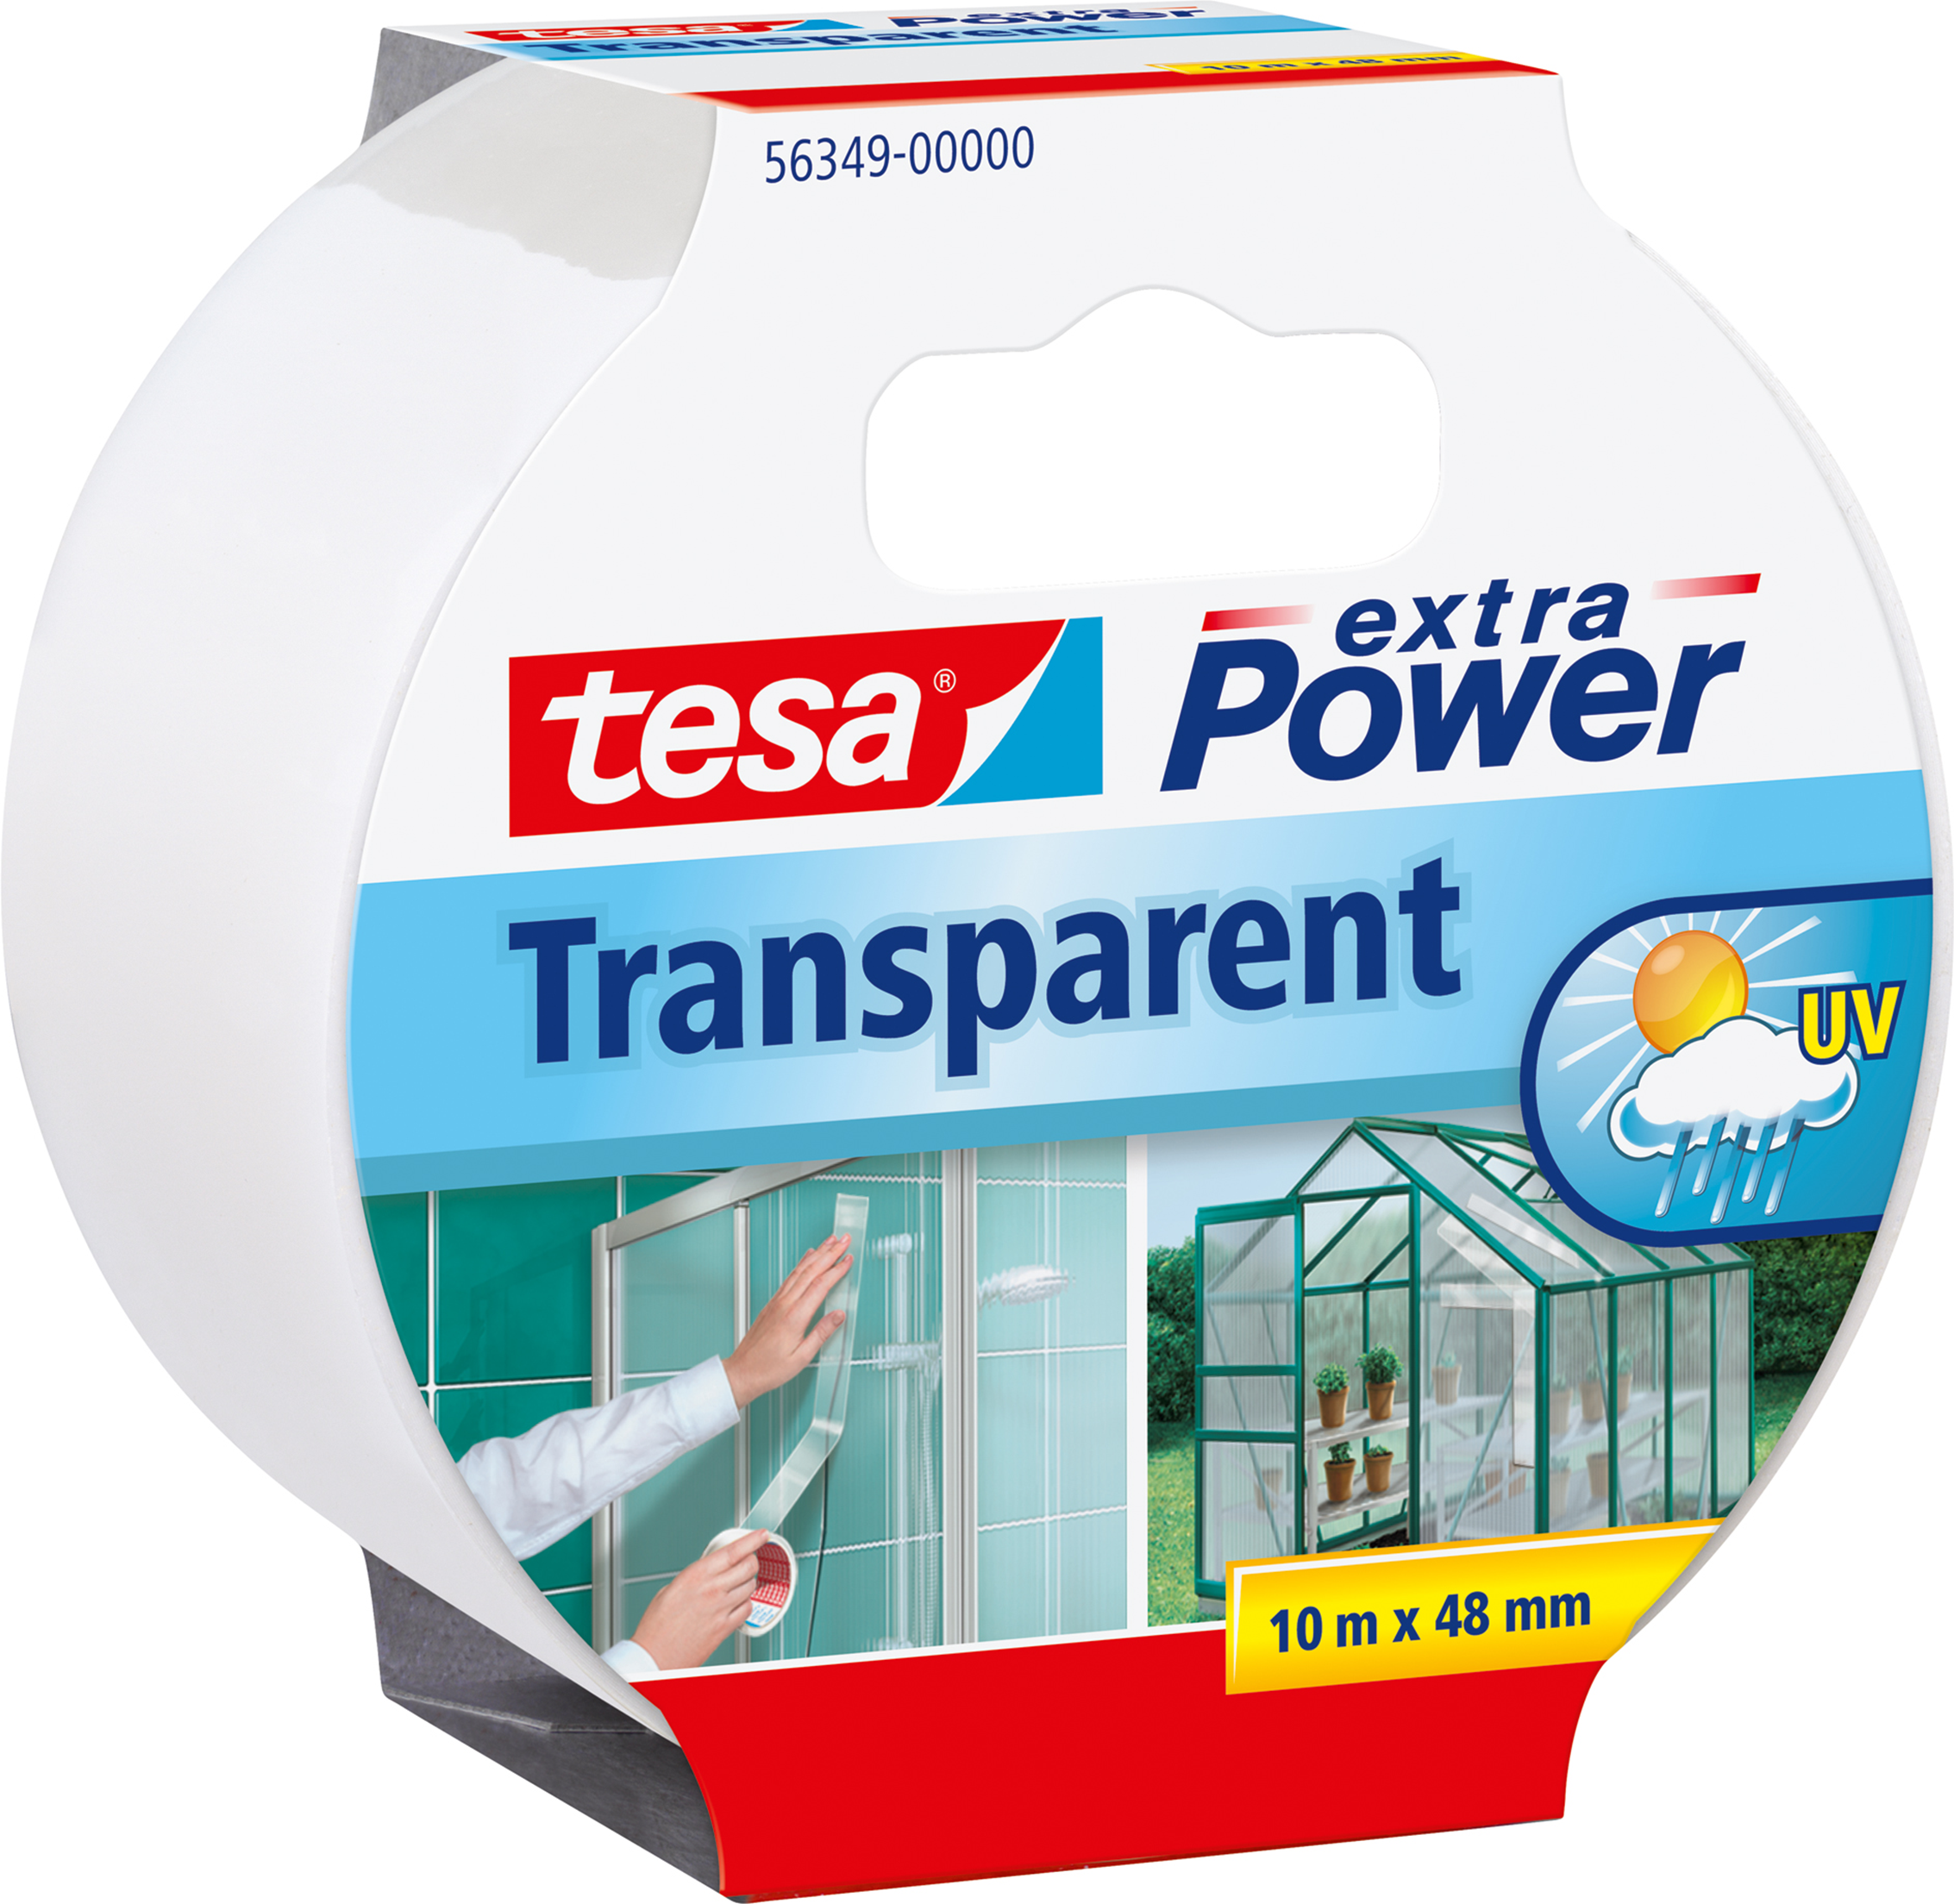 TESA extra Power Transparant (56349-00000-04)